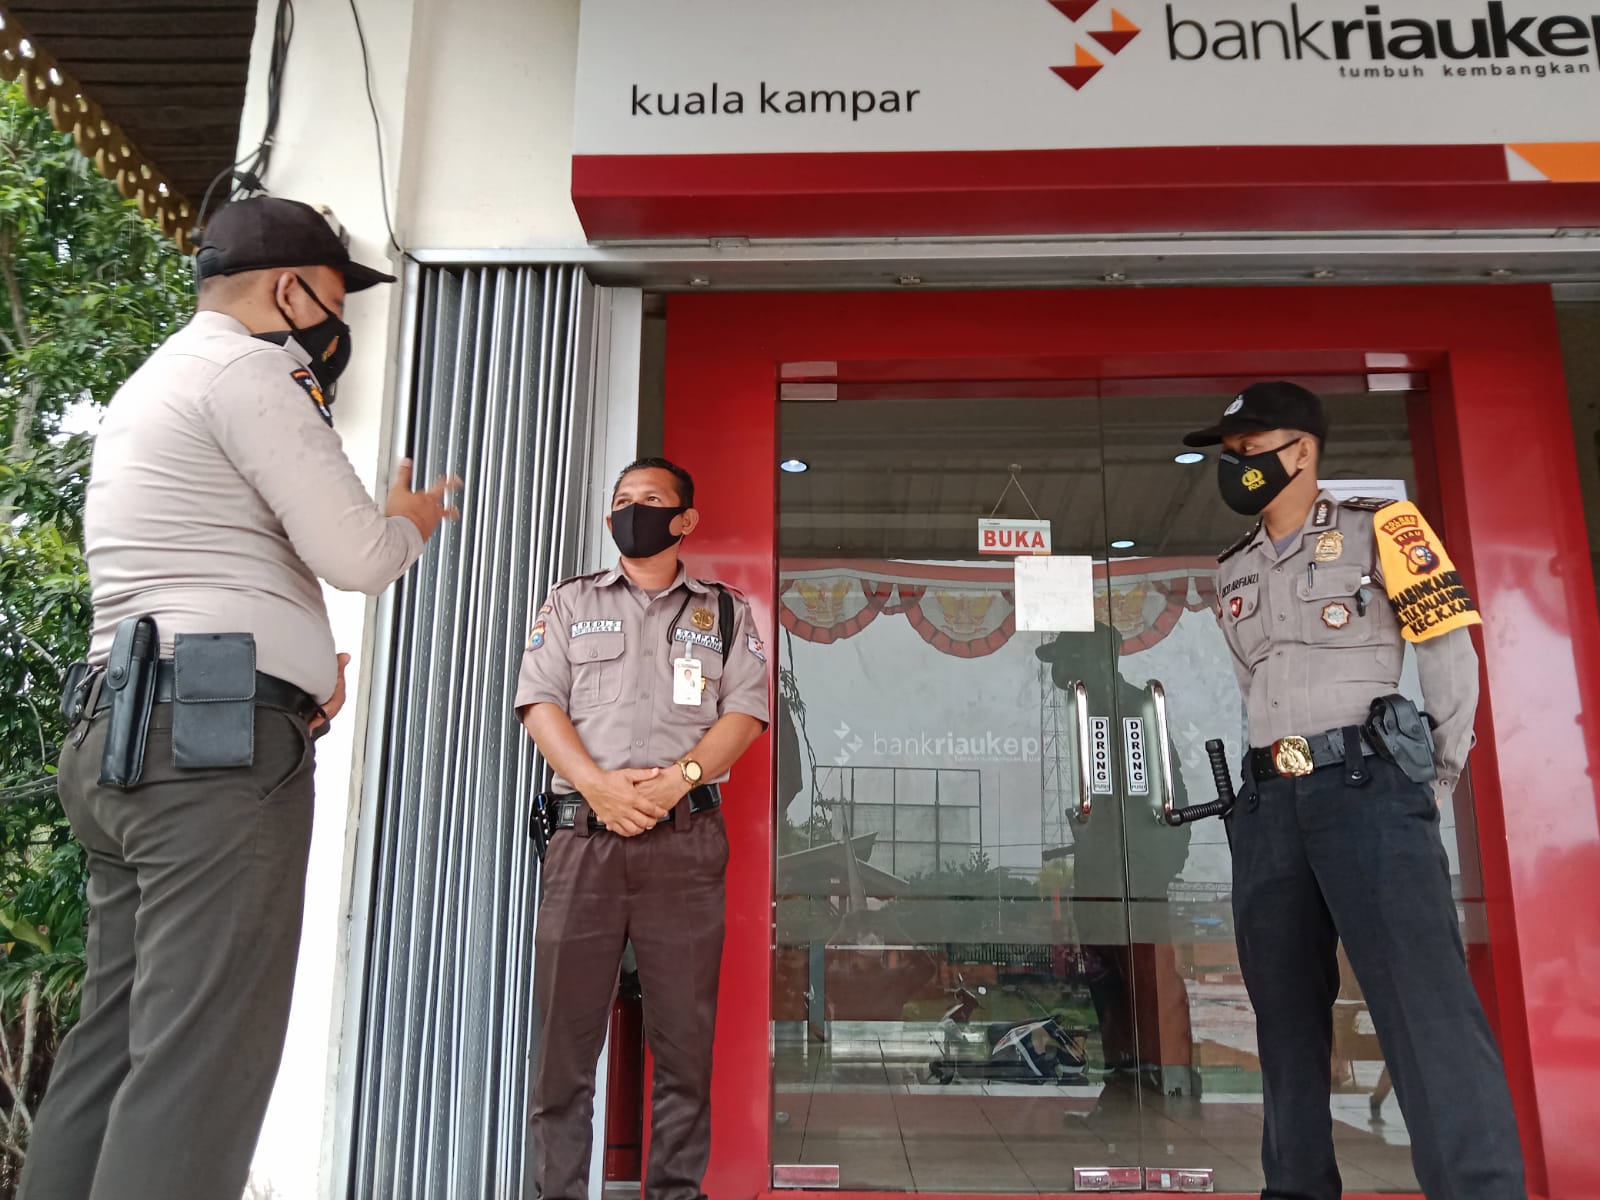 Antisipasi Tindak Kriminal, Polisi Berjaga di Perbankan Kecamatan Kuala Kampar Pelalawan